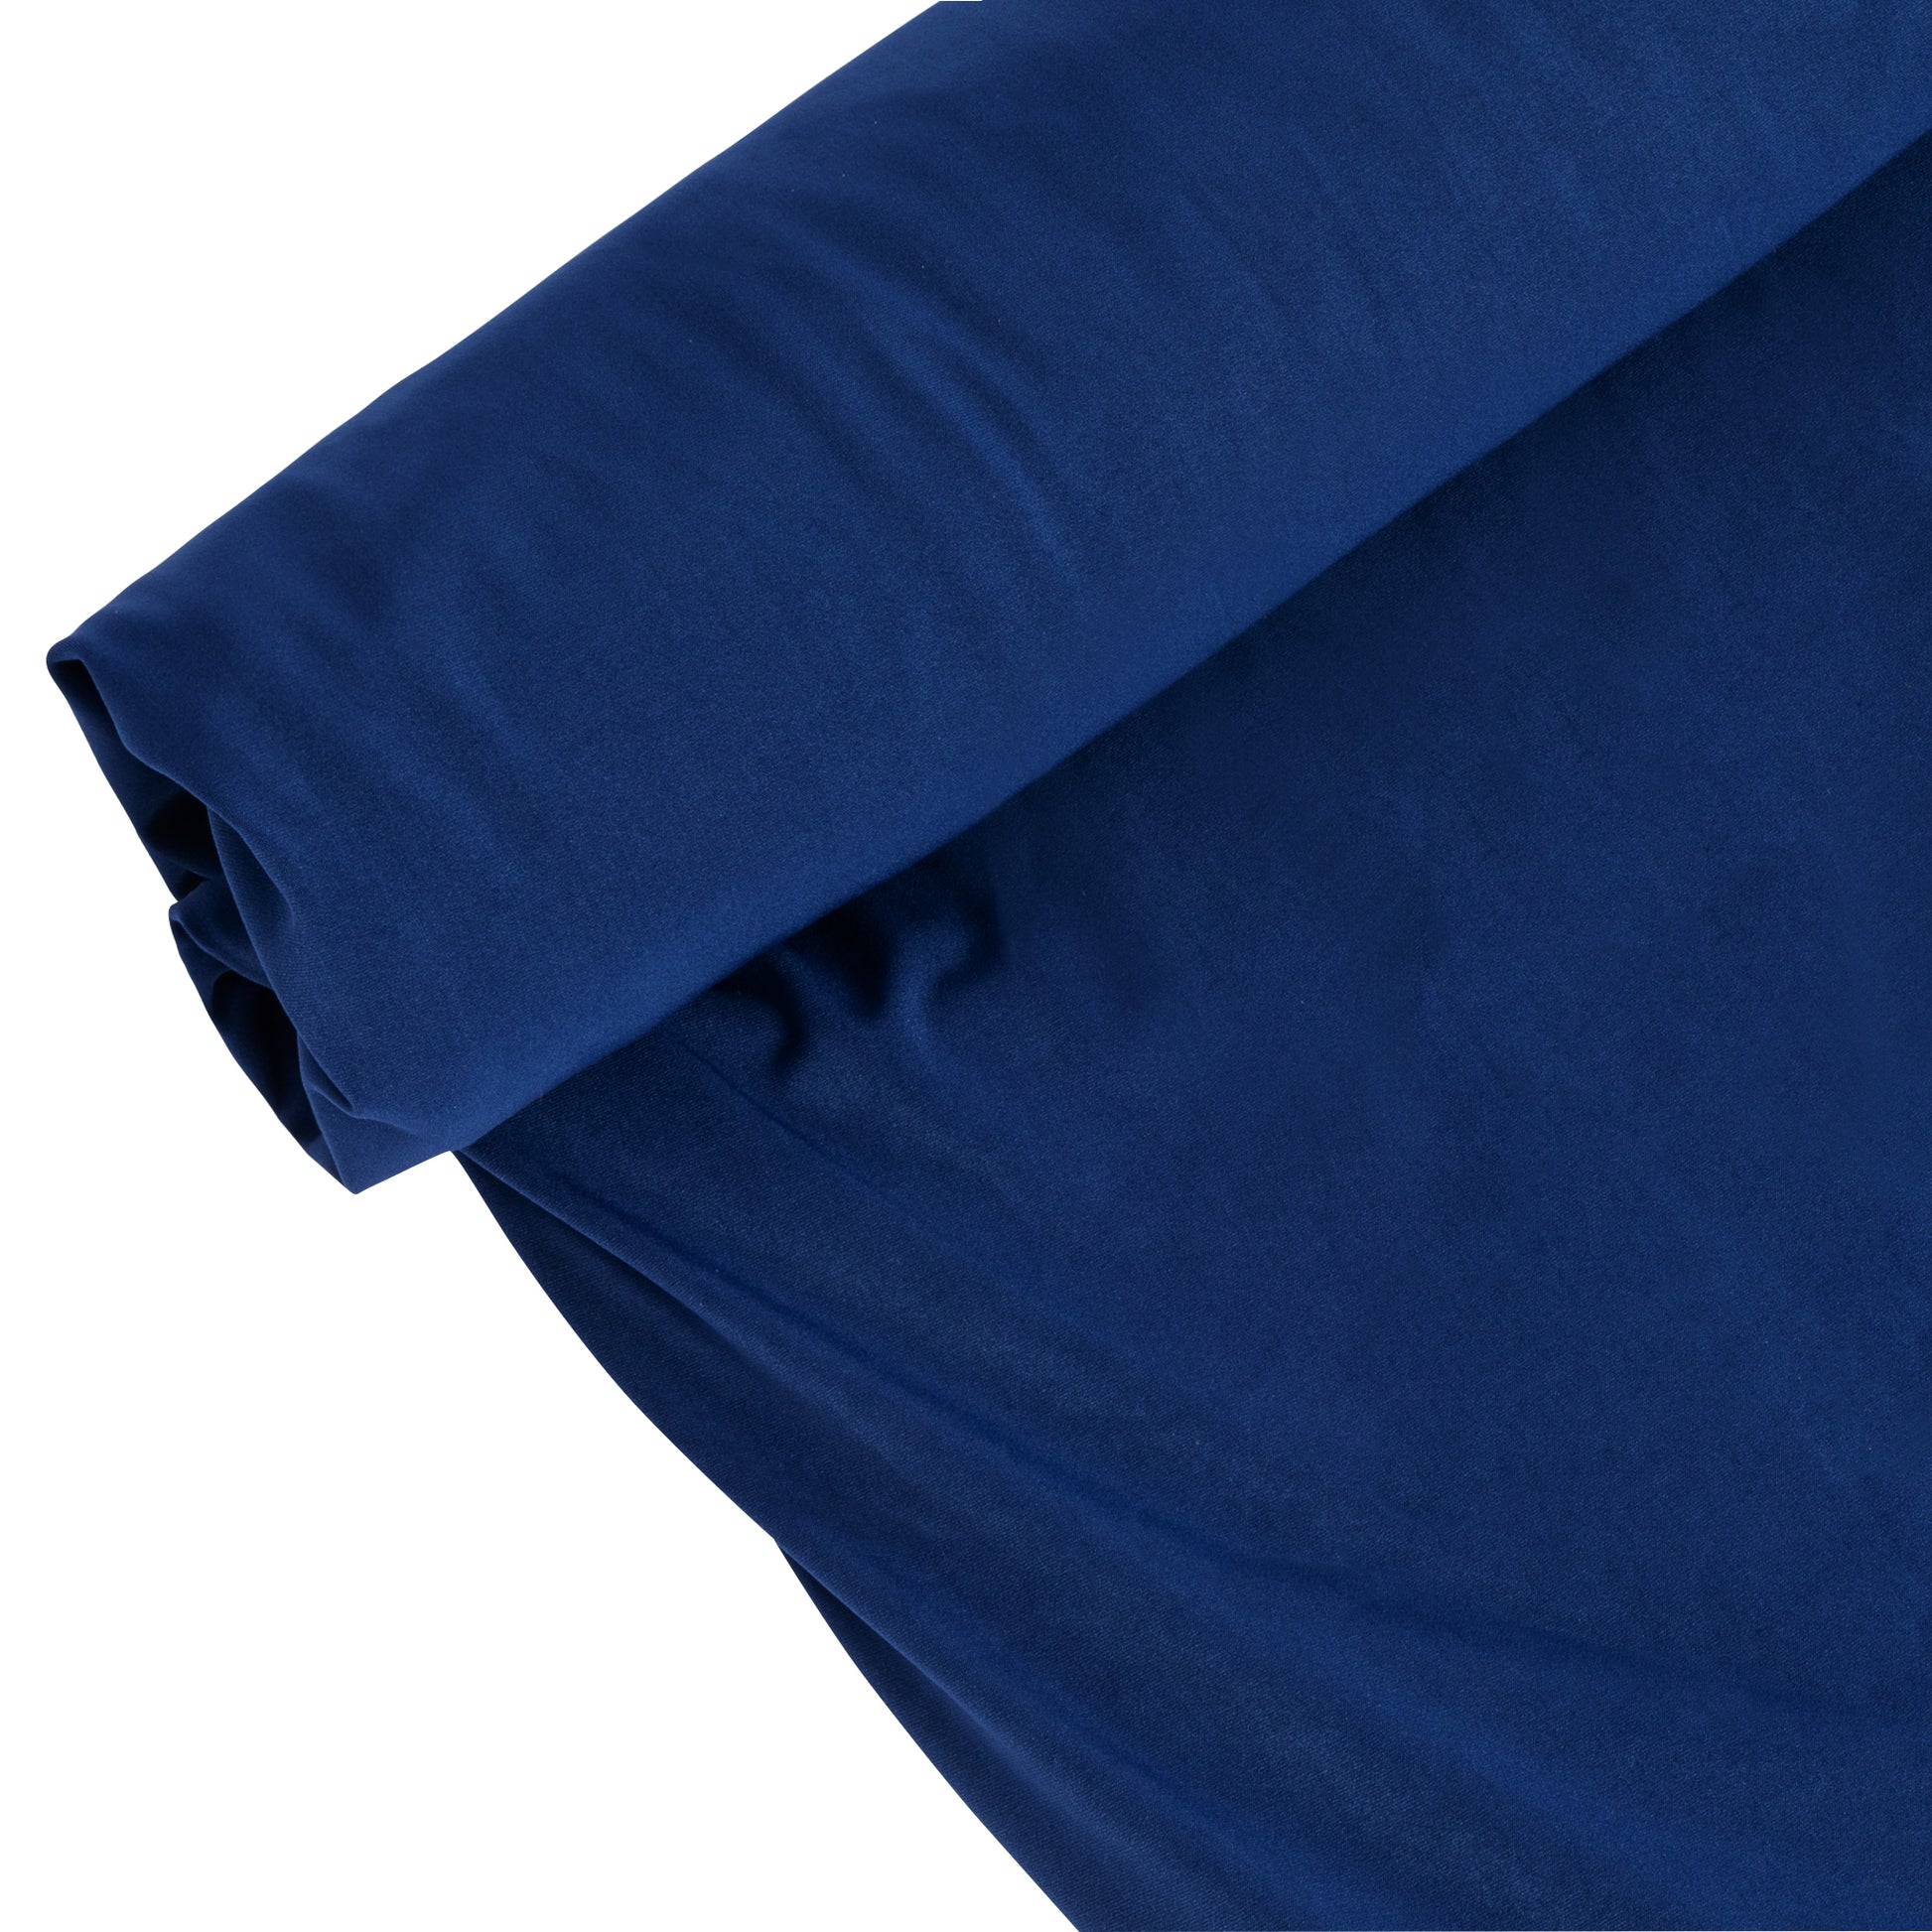 Spandex Stretch 4-way Fabric Roll 10 yds 58 - Baby Blue